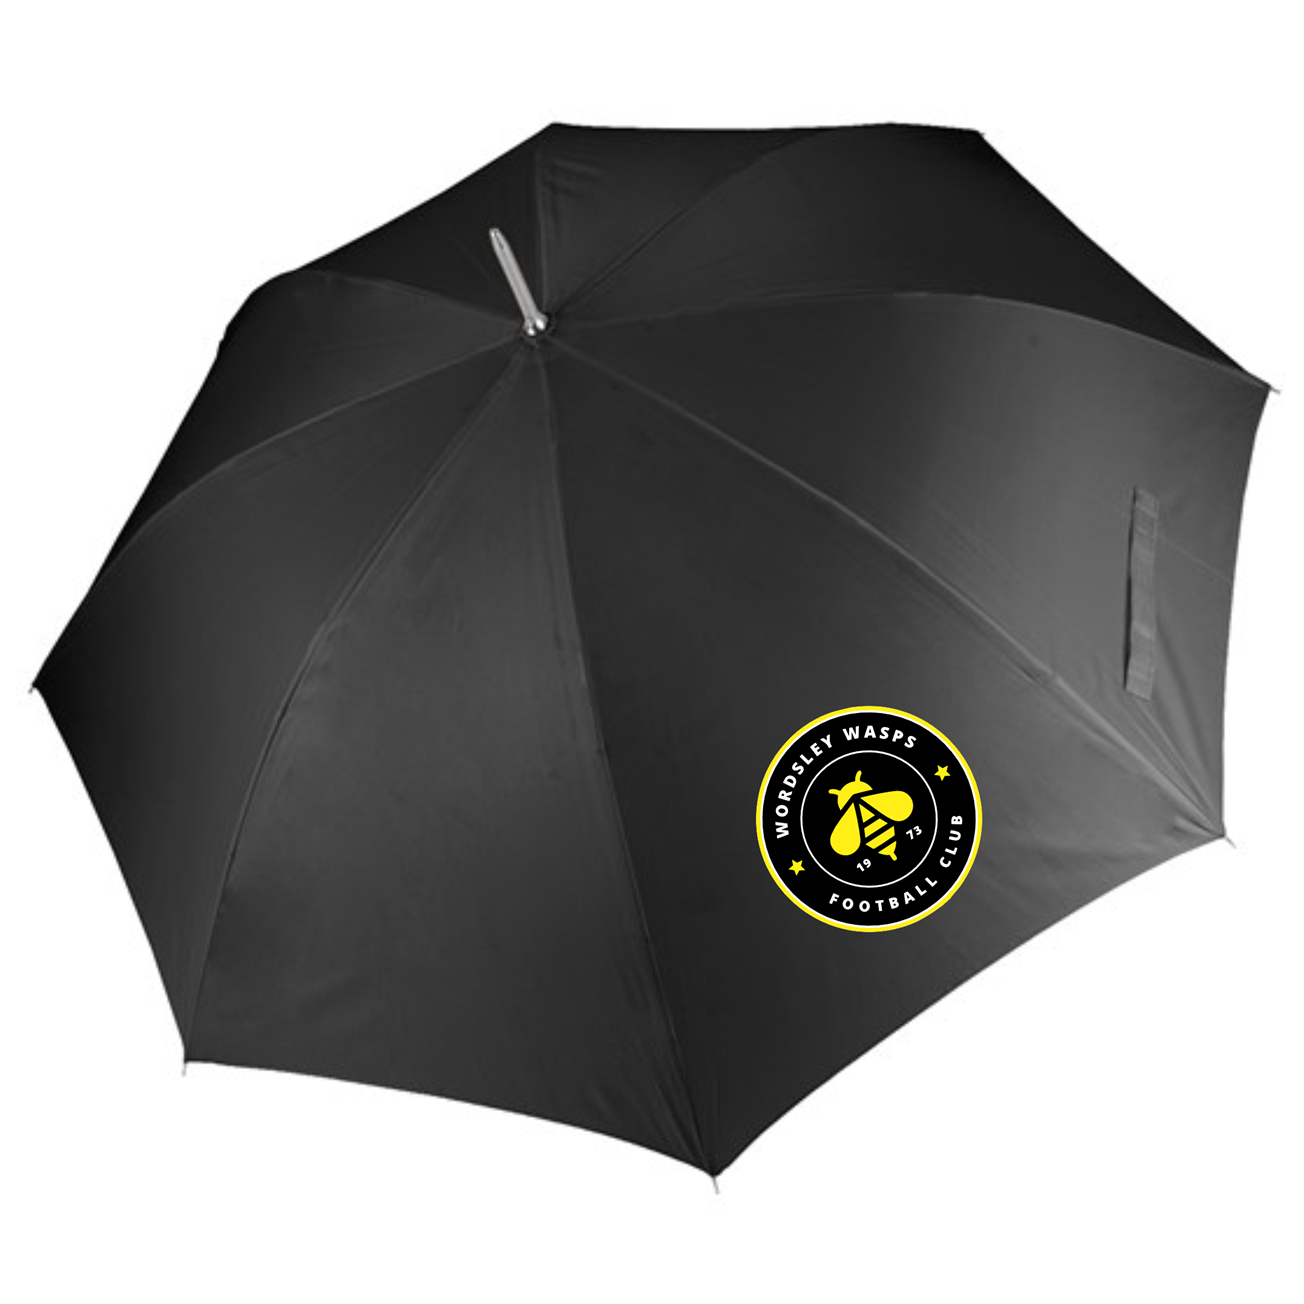 Wordsley Wasps - Umbrella